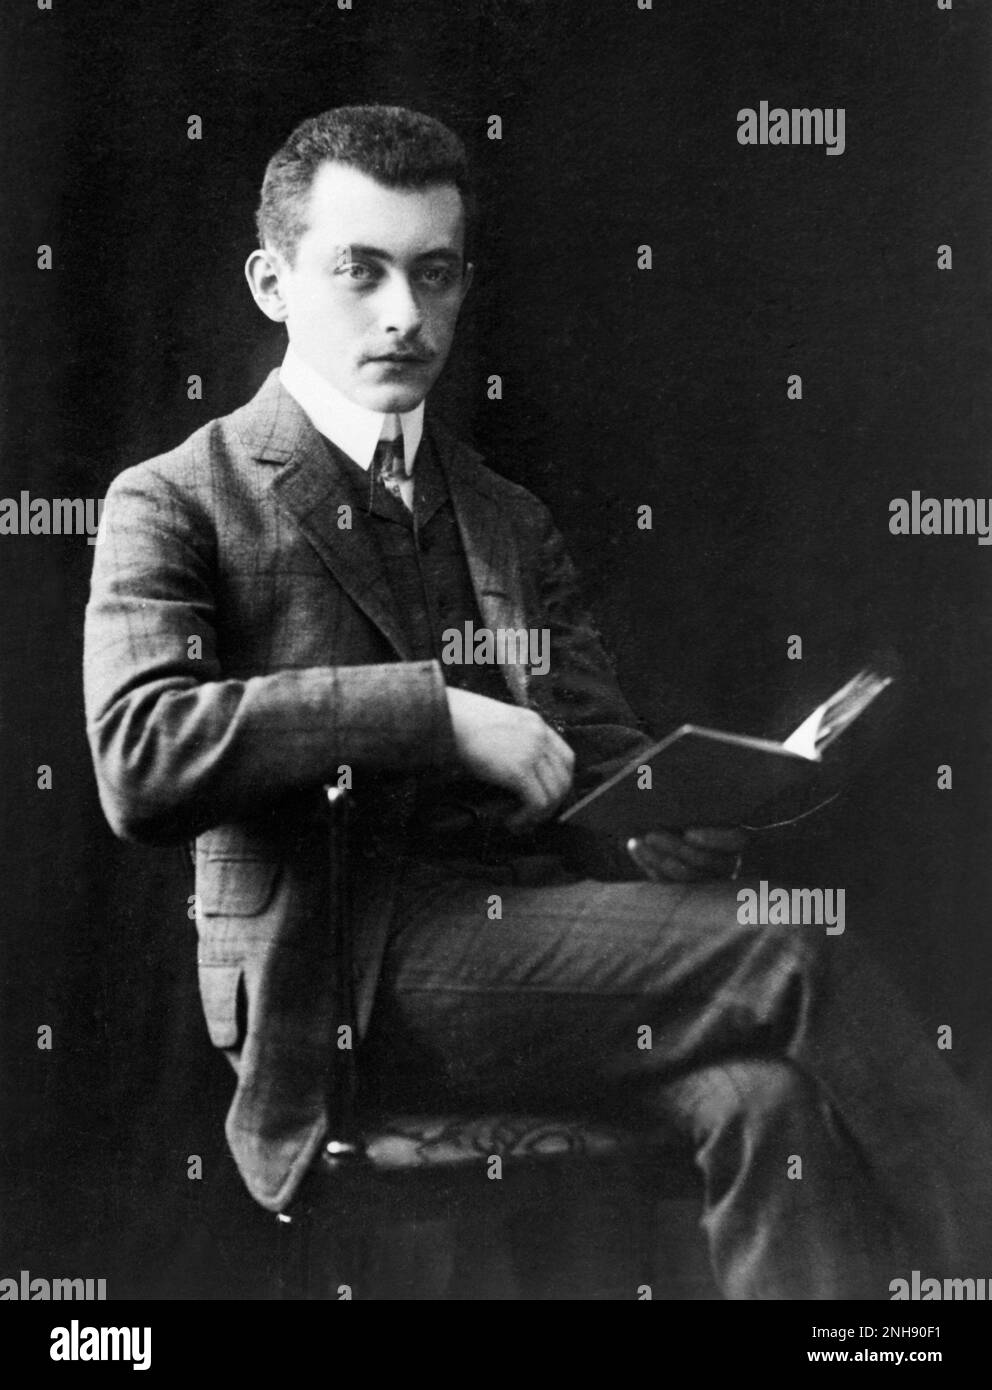 Ritratto di Max Born Reading, c. inizio 20th ° secolo. Nato (1882-1970) è stato un fisico e matematico tedesco che è stato strumentale nello sviluppo della meccanica quantistica. Ha vinto il Premio Nobel 1954 in fisica. Foto Stock